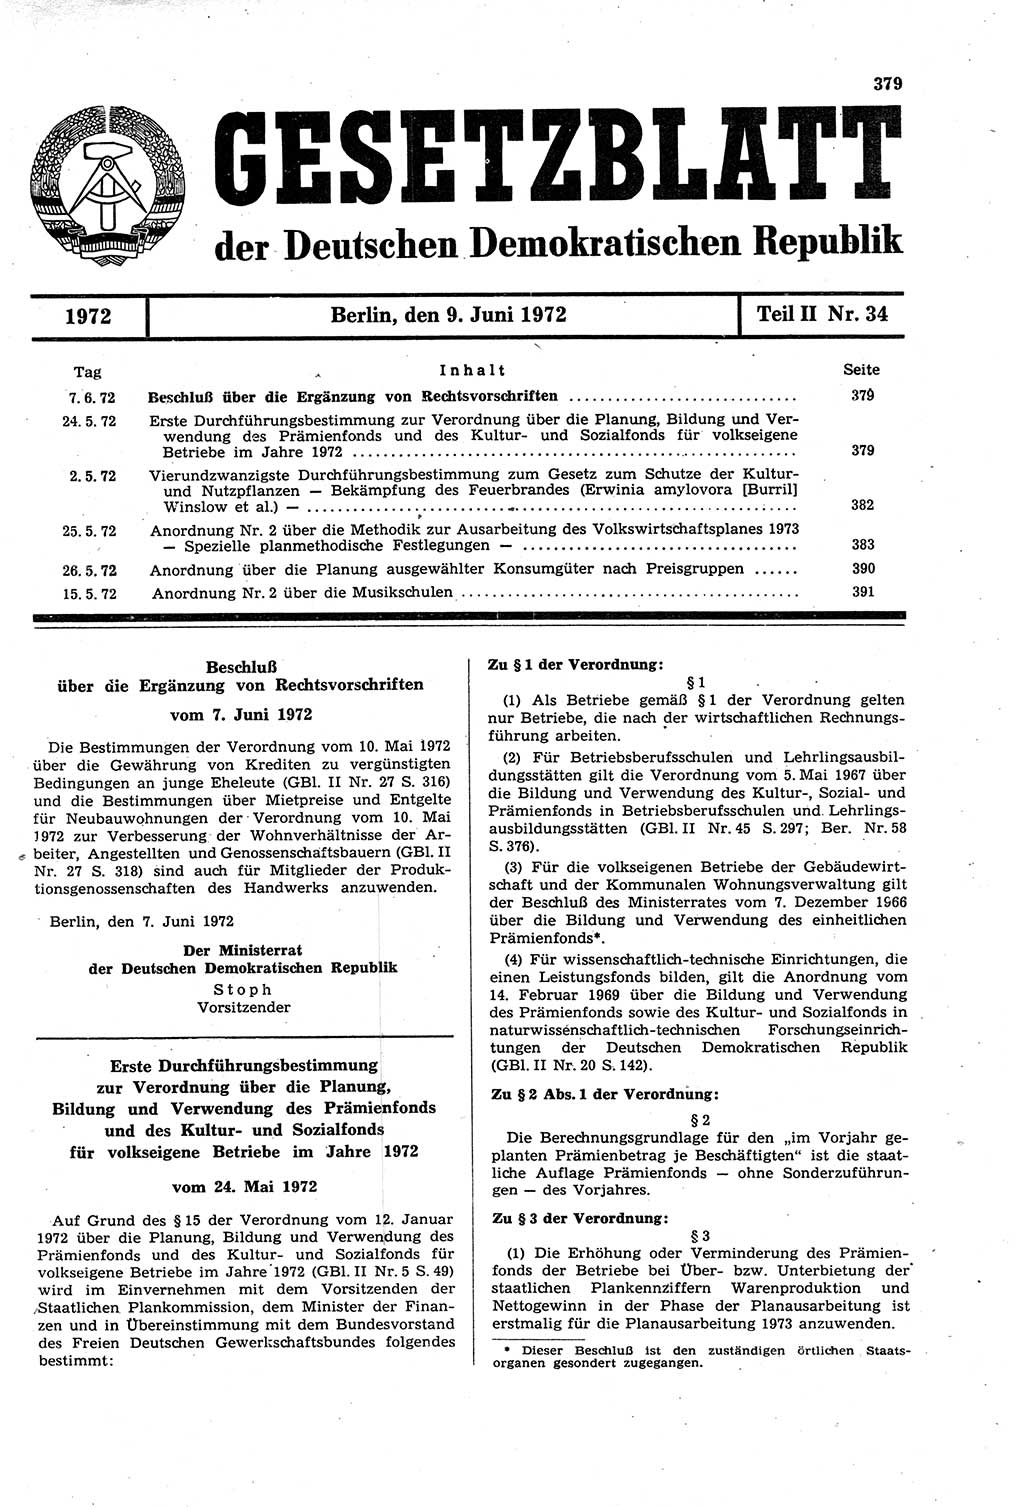 Gesetzblatt (GBl.) der Deutschen Demokratischen Republik (DDR) Teil ⅠⅠ 1972, Seite 379 (GBl. DDR ⅠⅠ 1972, S. 379)